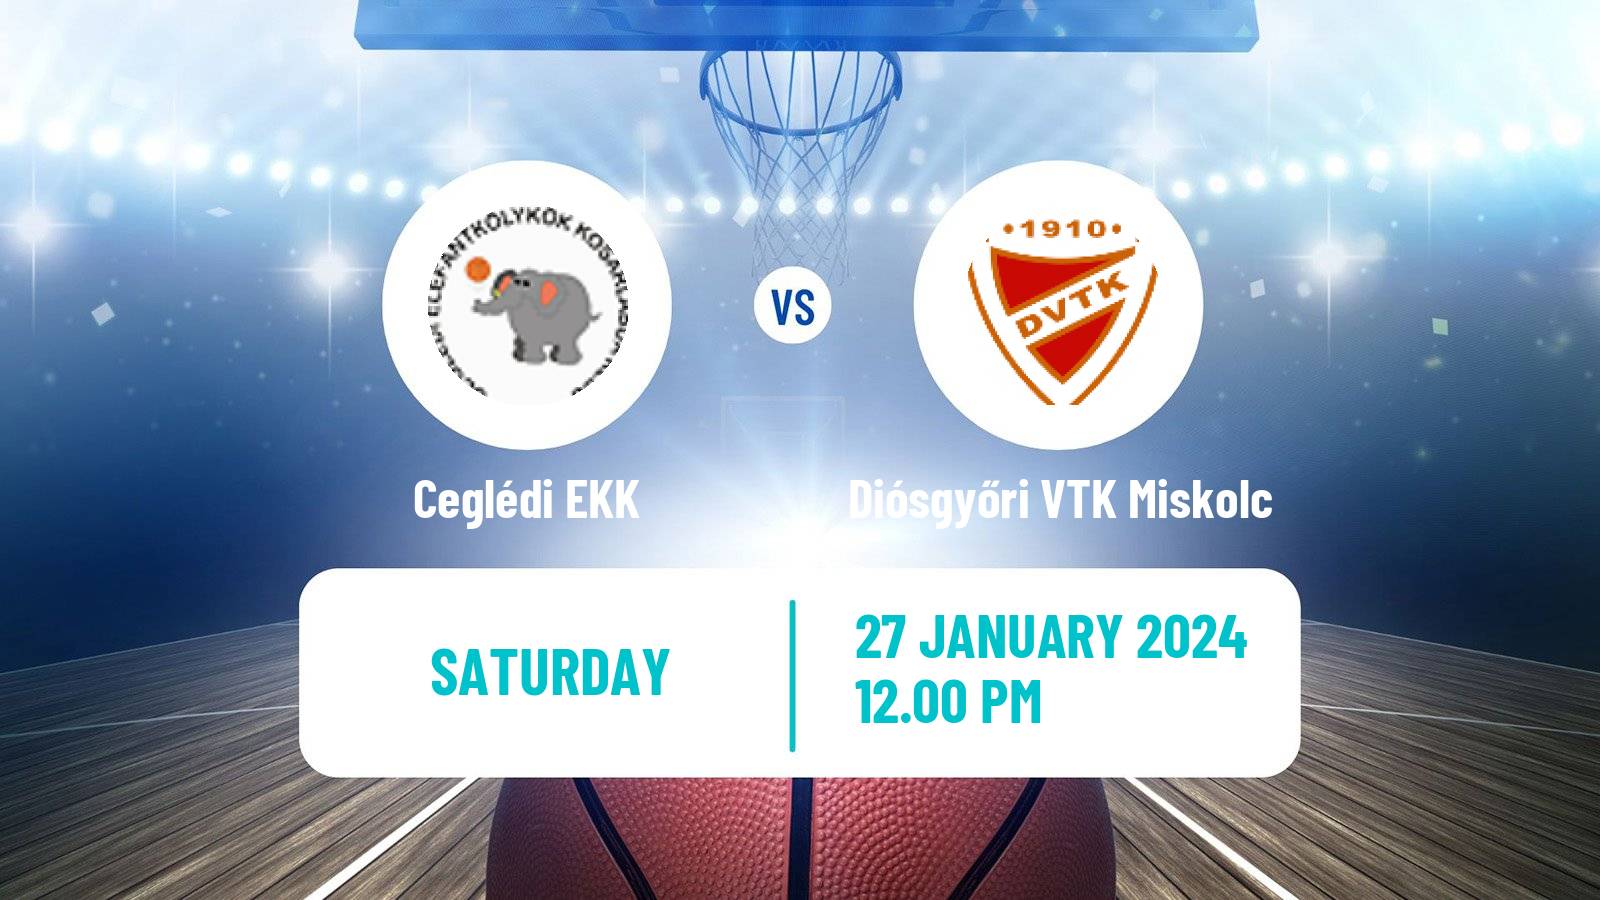 Basketball Hungarian NB I Basketball Women Ceglédi EKK - Diósgyőri VTK Miskolc